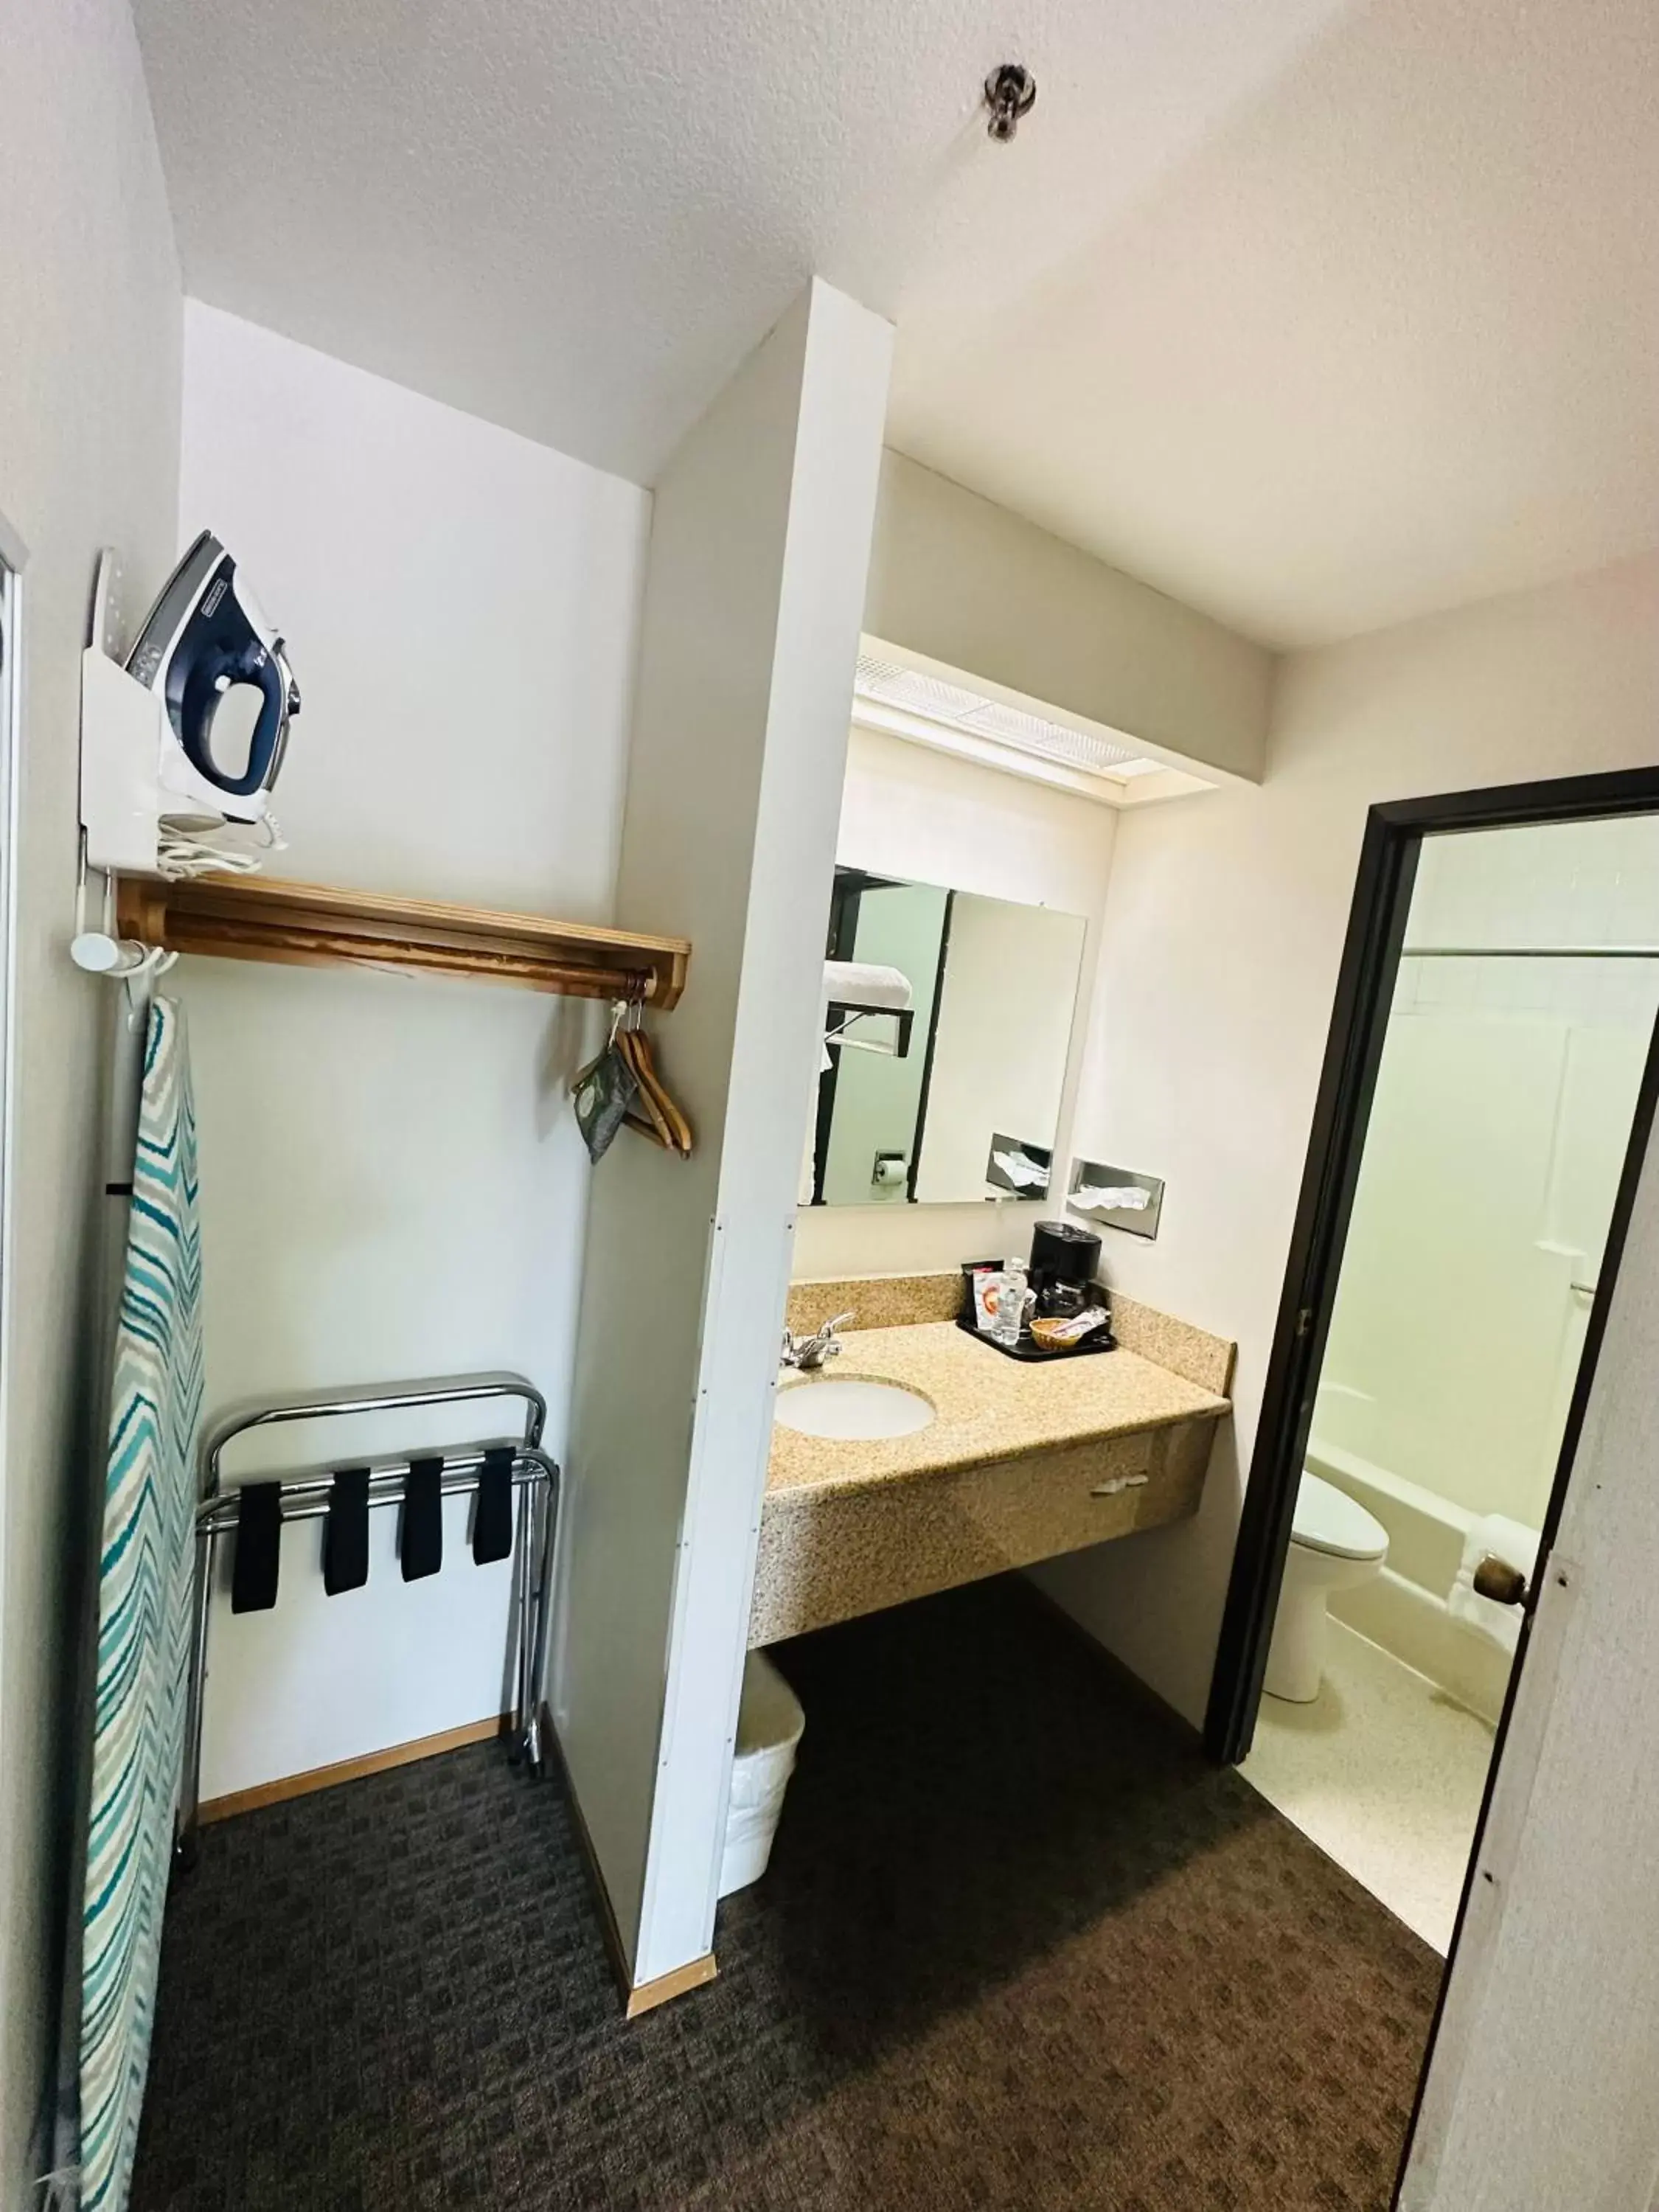 Bathroom in Timberland Inn & Suites